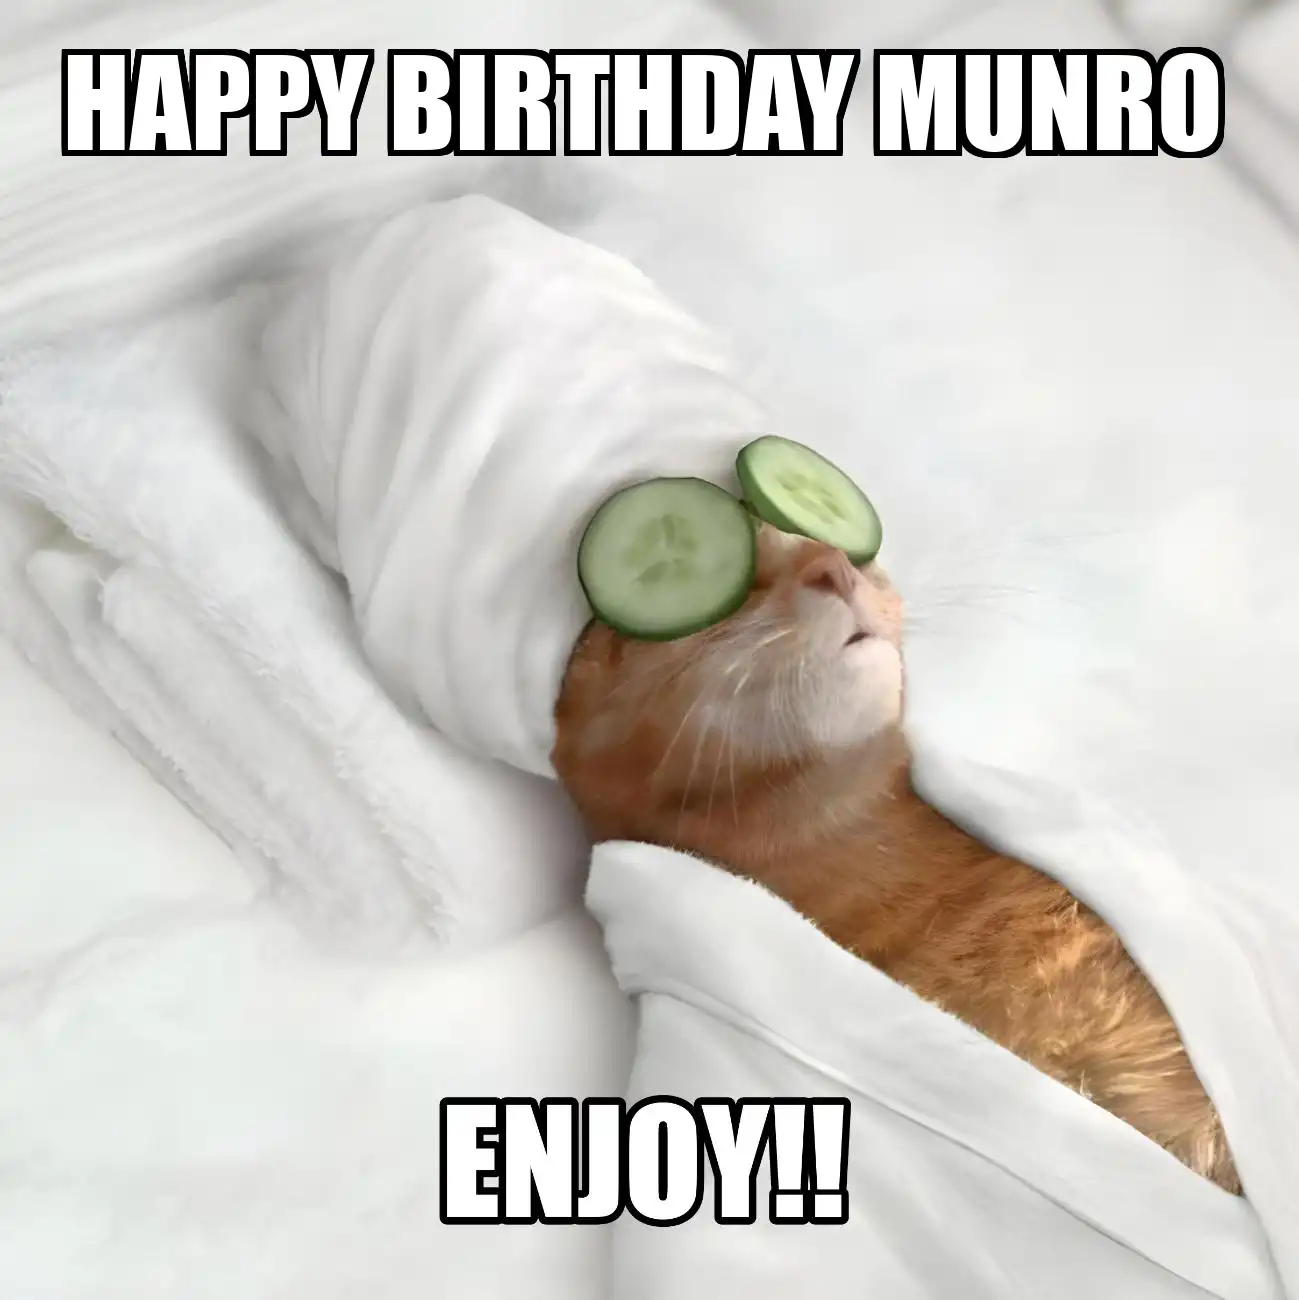 Happy Birthday Munro Enjoy Cat Meme